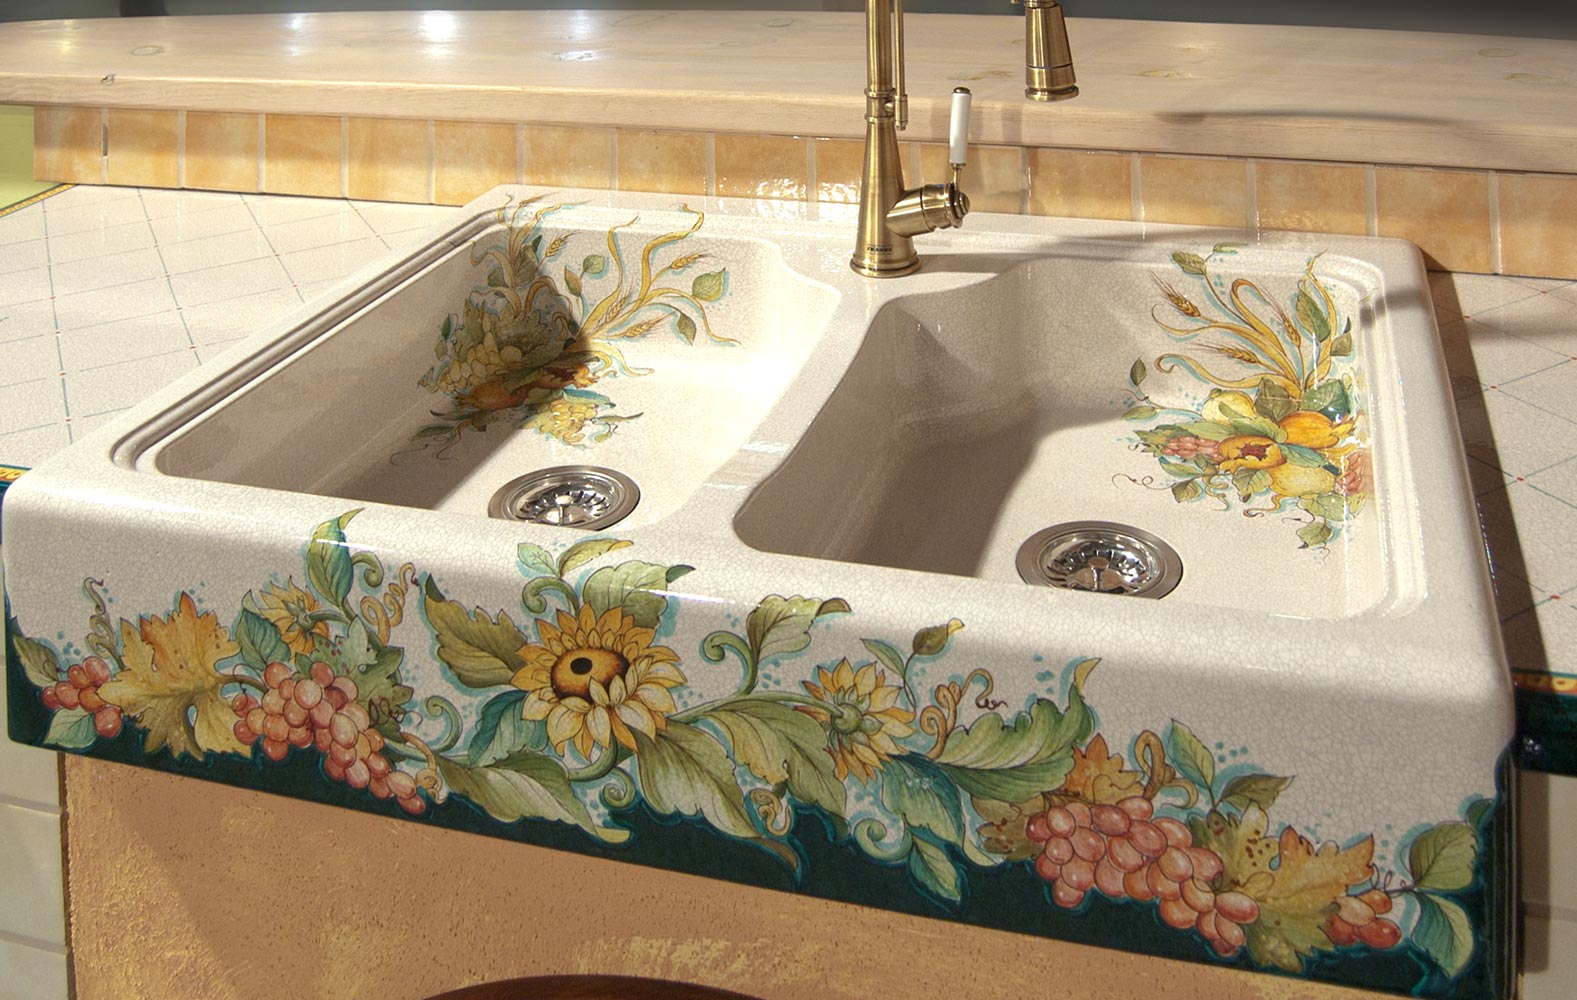 lavello cucina in muratura decorato